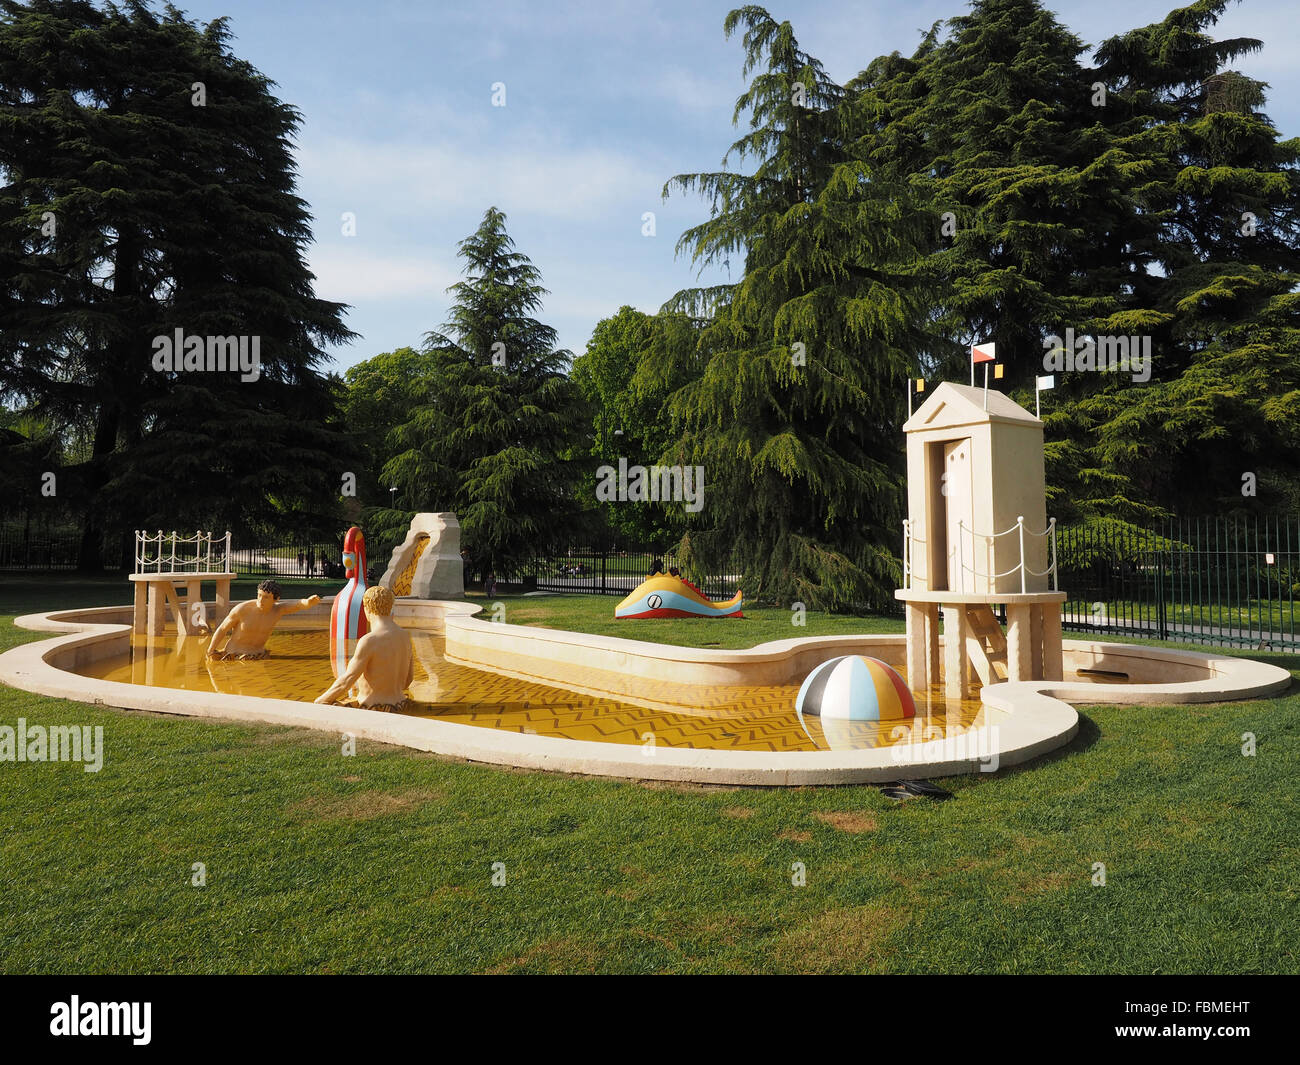 I Bagni Misteriosi fountain, Giorgio De Chirico artist, Triennale museum, Parco Sempione park, Milan, Lombardy, Italy, Europe Stock Photo